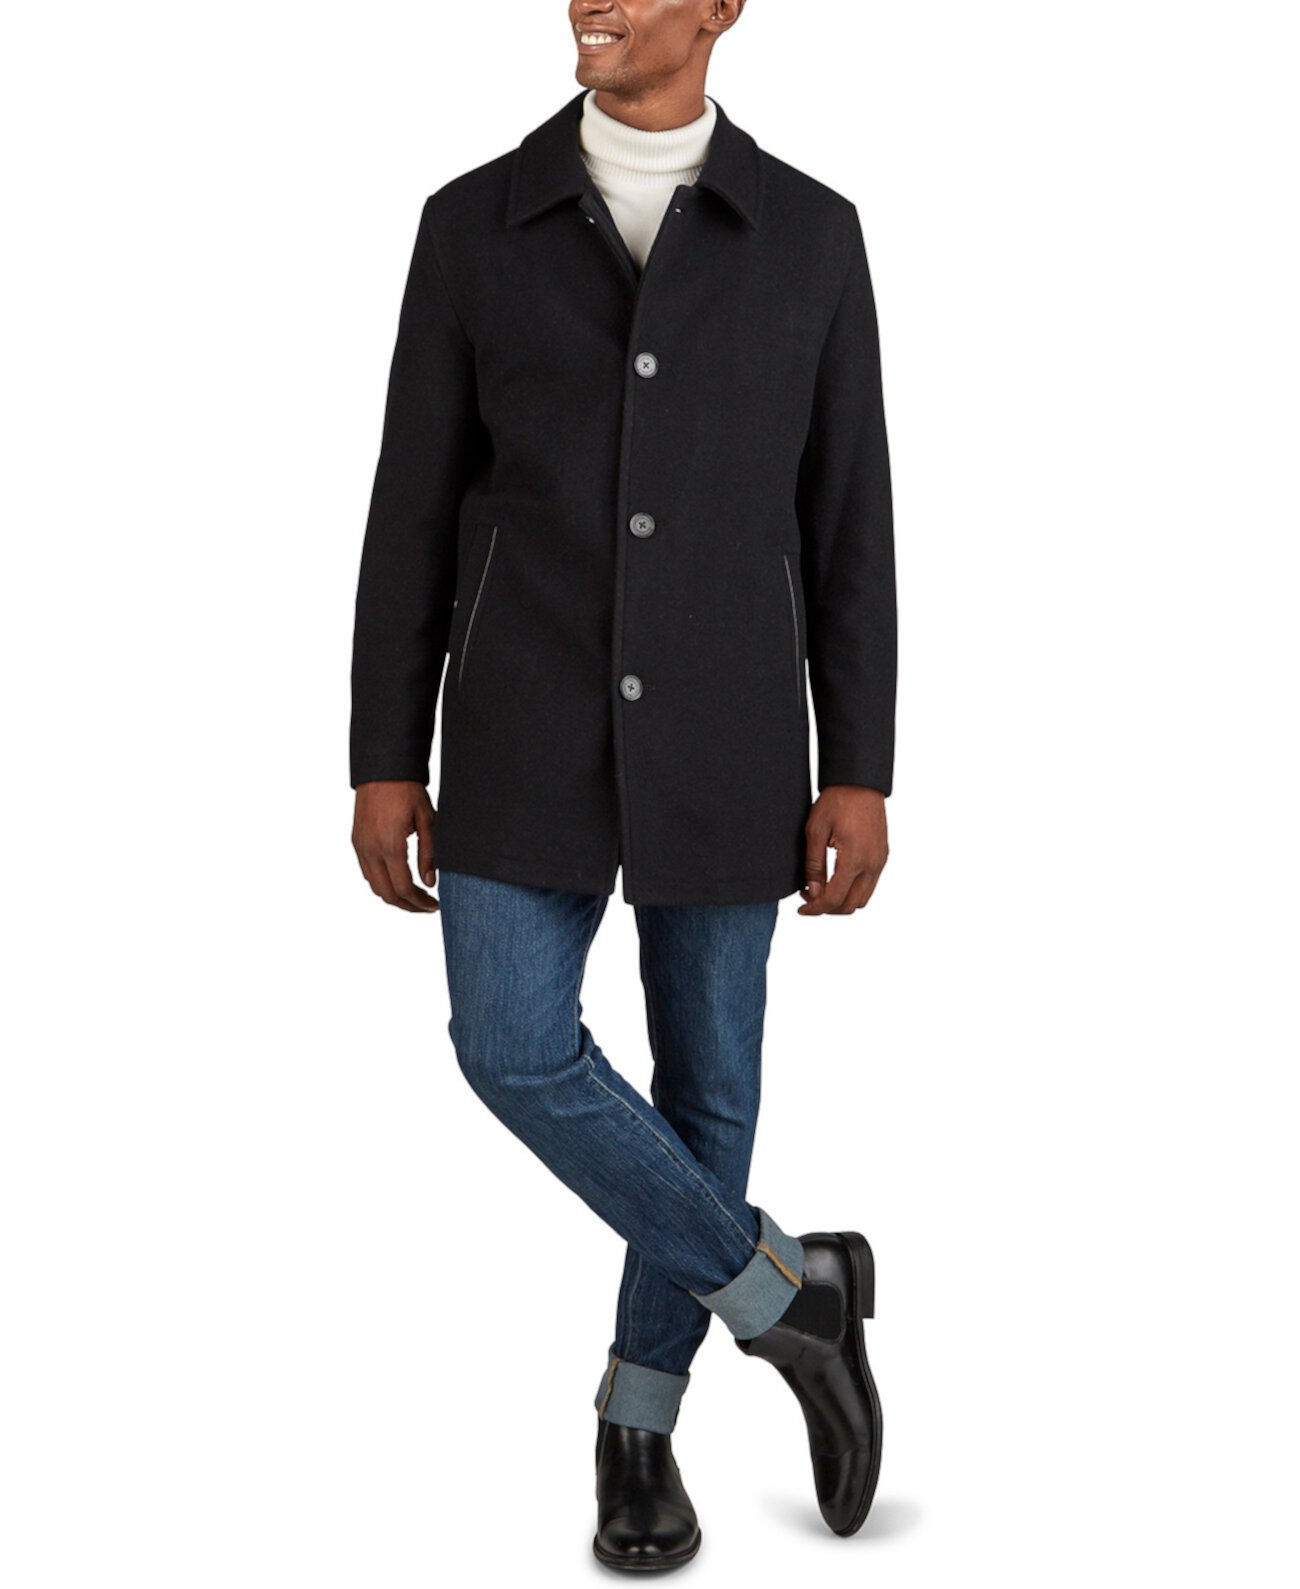 Мужское классическое автомобильное пальто с имитацией кожаных вставок Cole Haan, категория Вул & Пи Коутс Cole Haan